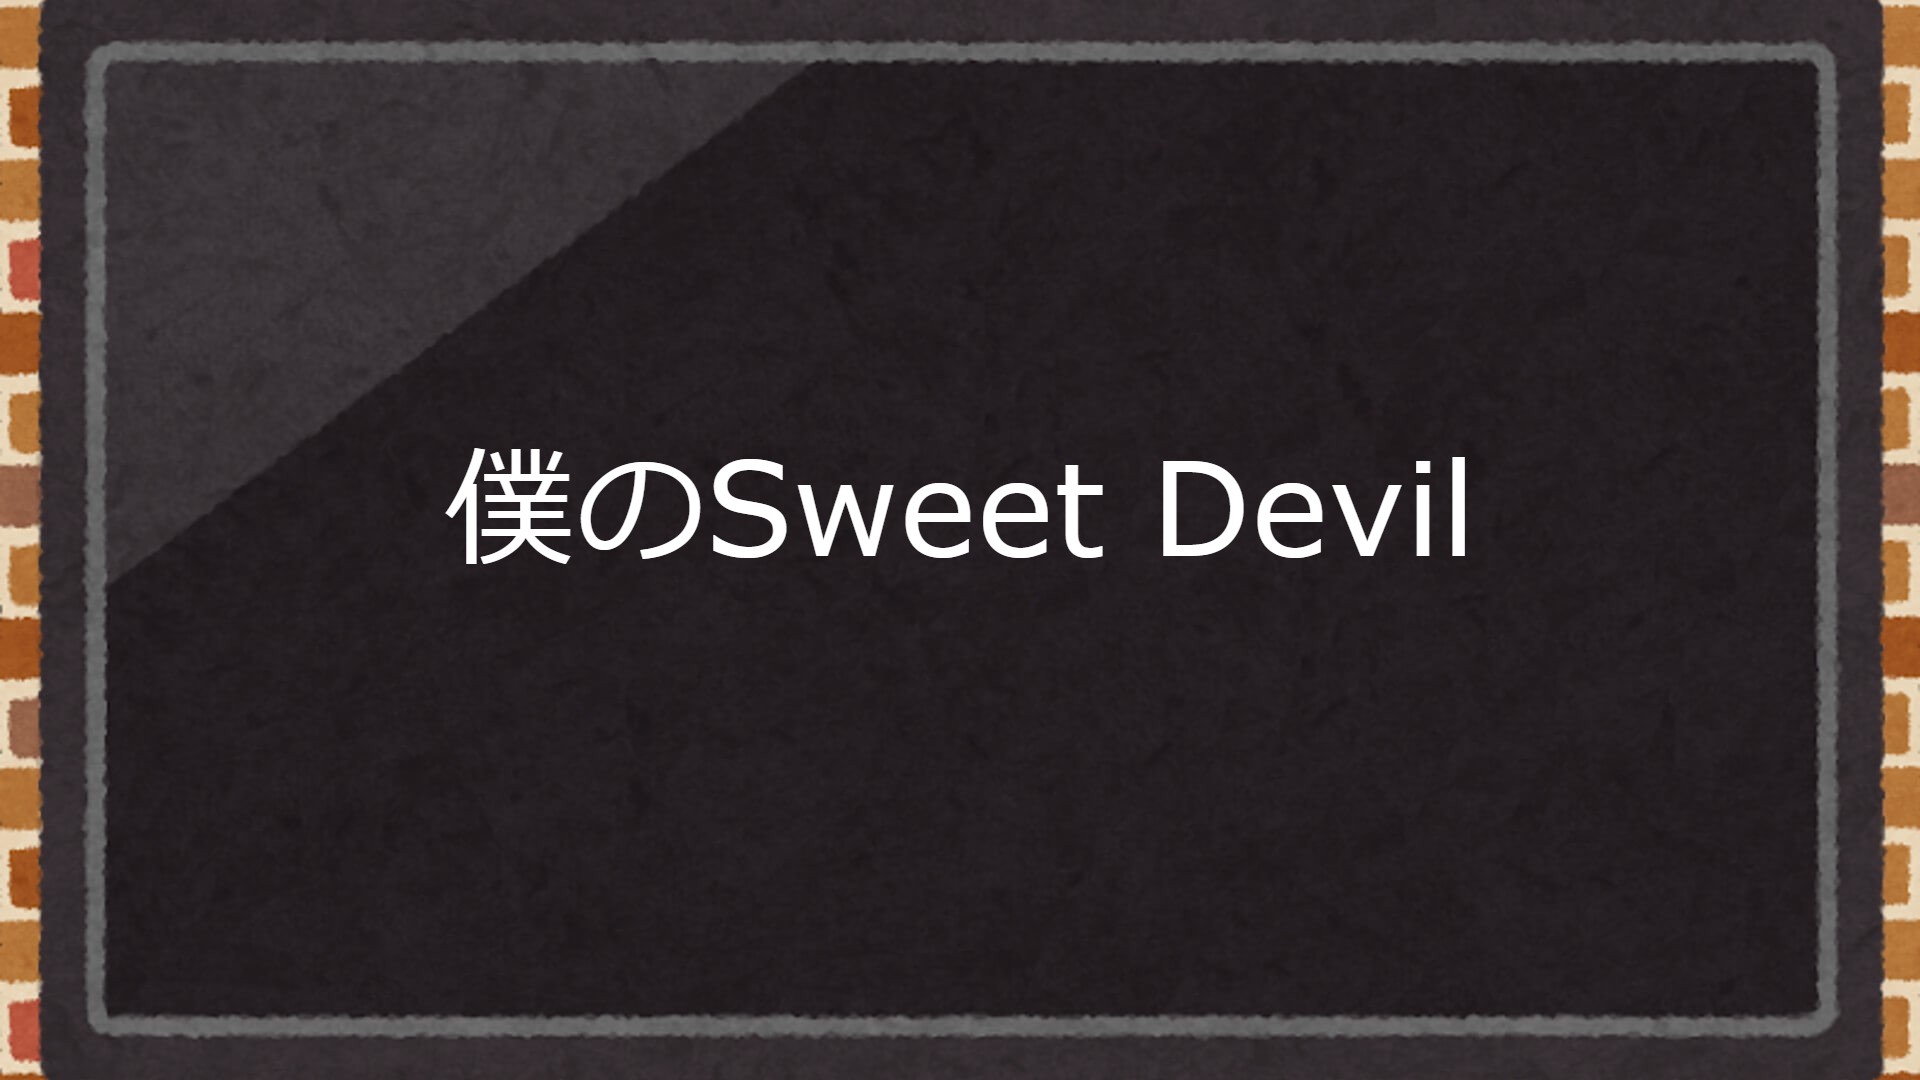 アジアドラマ『僕のSweet Devil』の日本語字幕・吹替版を全話無料で視聴できる動画配信サービスまとめ